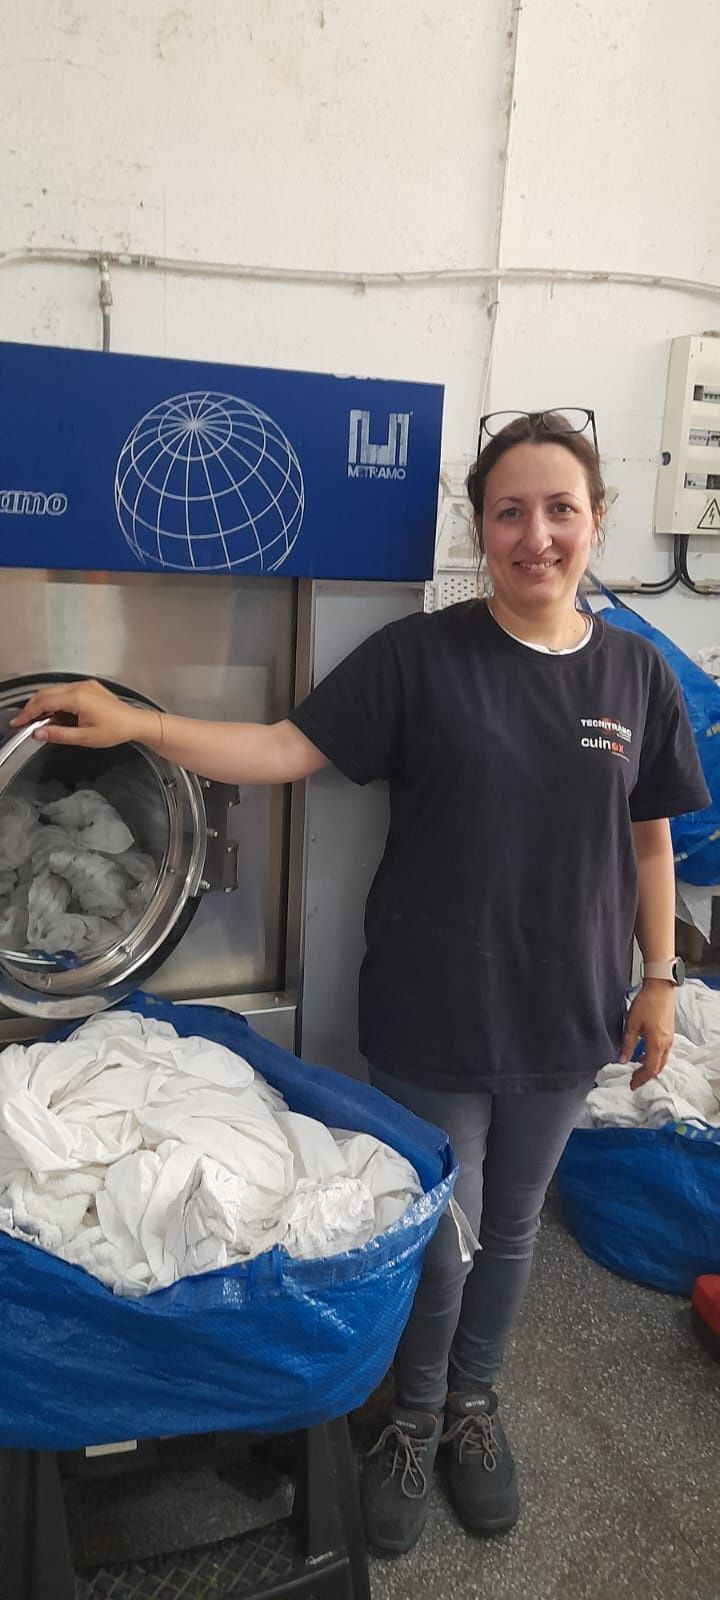 Maquina de lavar roupa industrial 22kg